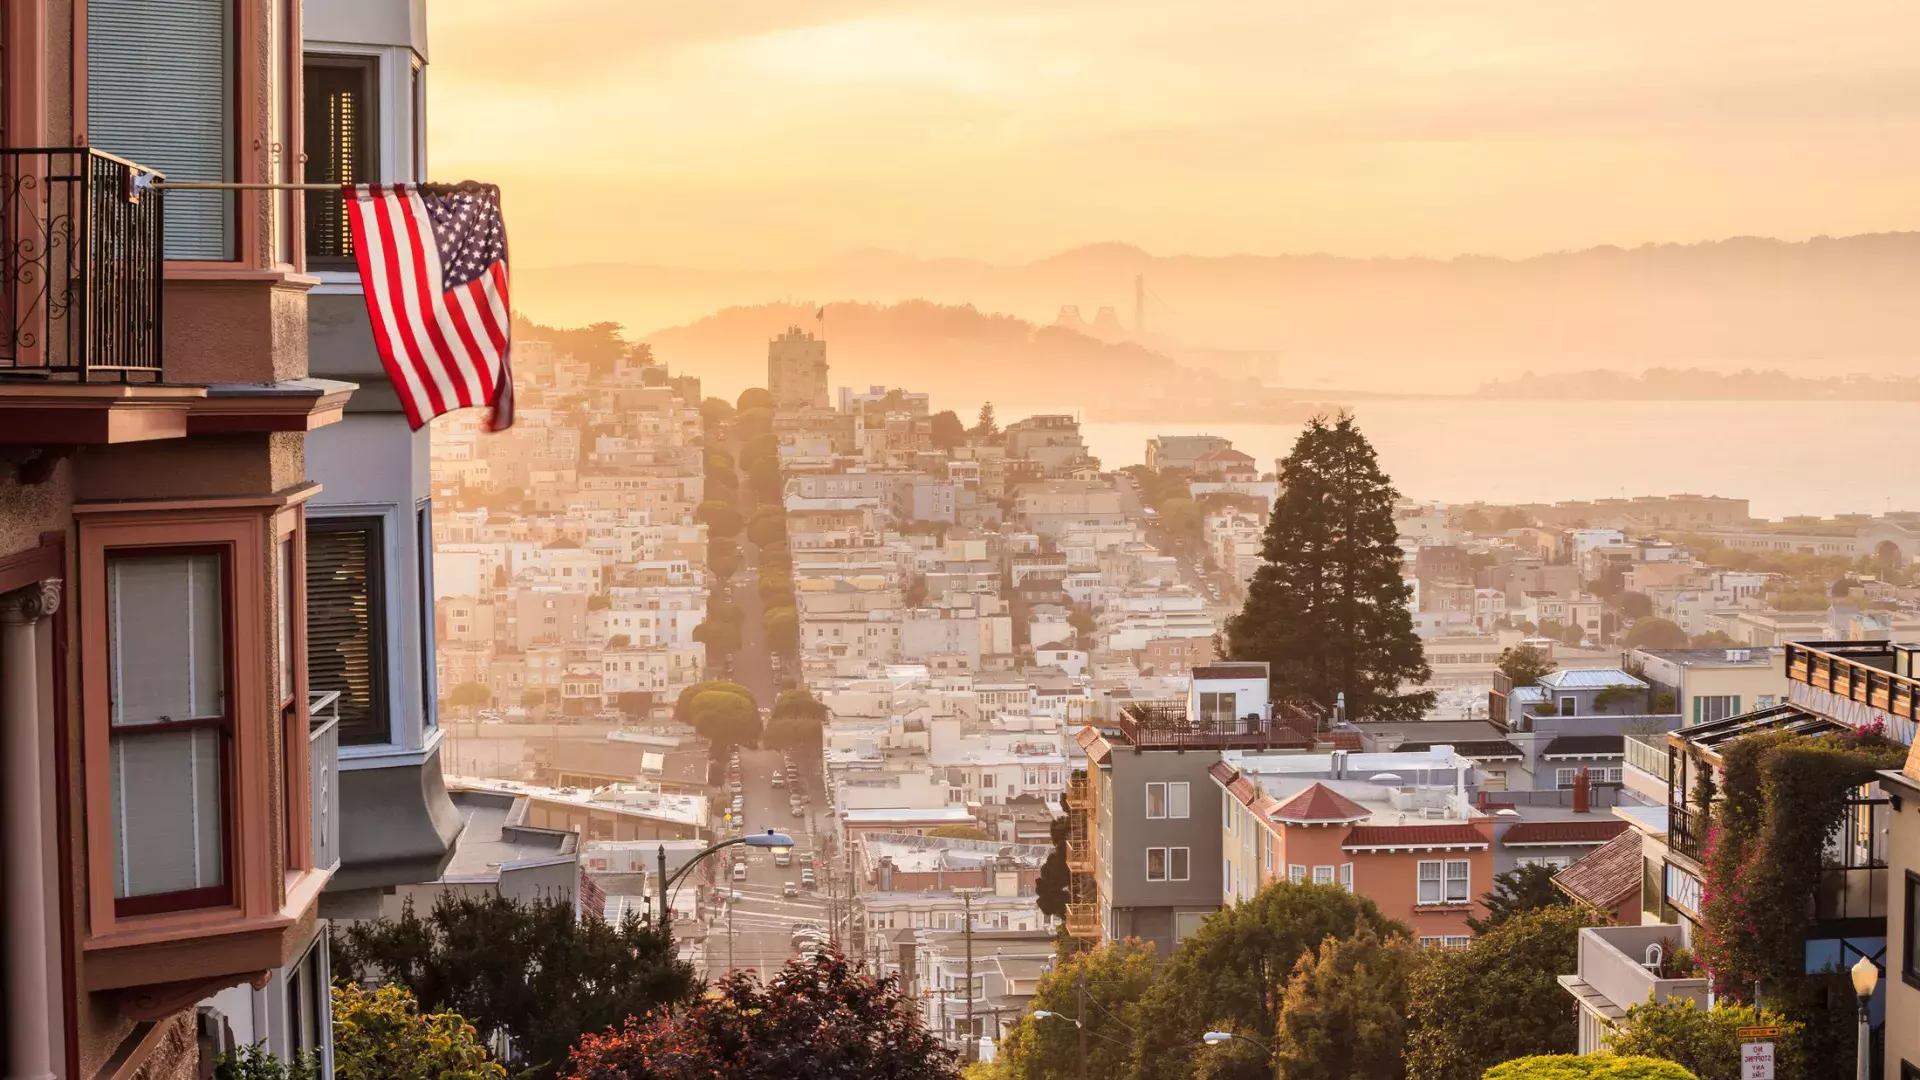 Uma vista de São Francisco do topo de uma colina, com uma bandeira americana tremulando em primeiro plano.